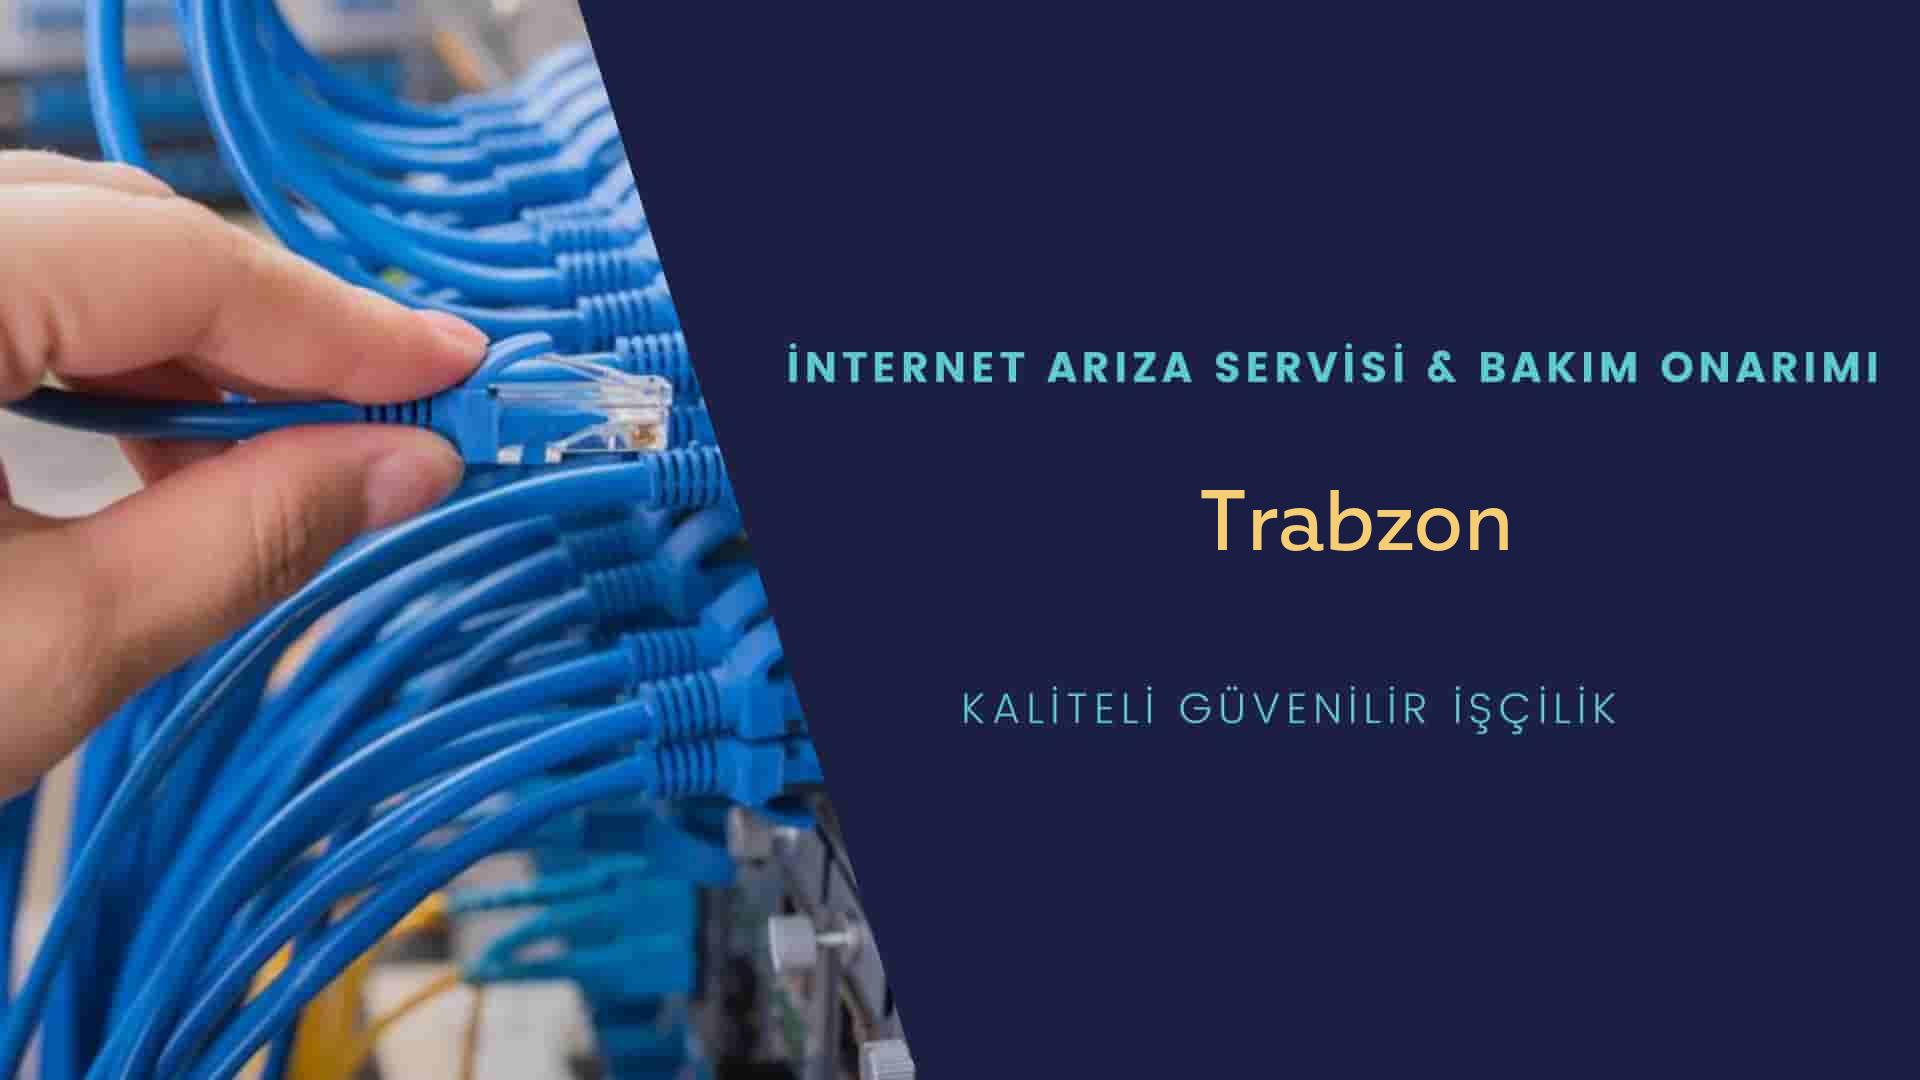 Trabzon internet kablosu çekimi yapan yerler veya elektrikçiler mi? arıyorsunuz doğru yerdesiniz o zaman sizlere 7/24 yardımcı olacak profesyonel ustalarımız bir telefon kadar yakındır size.